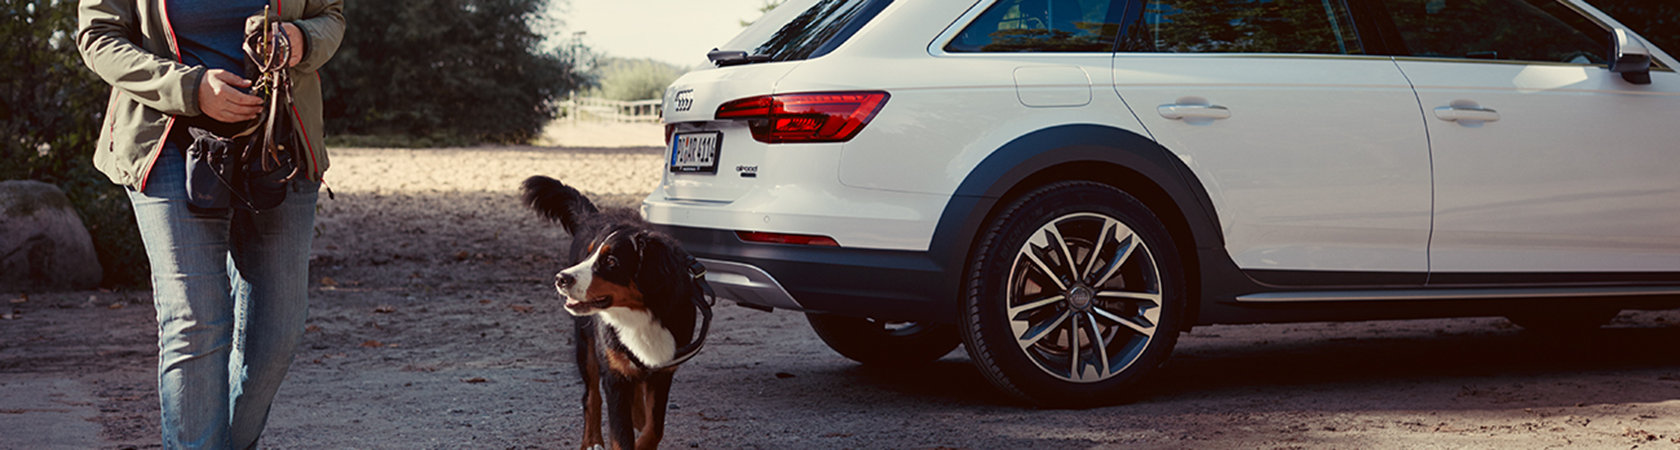 Audi og hund.png